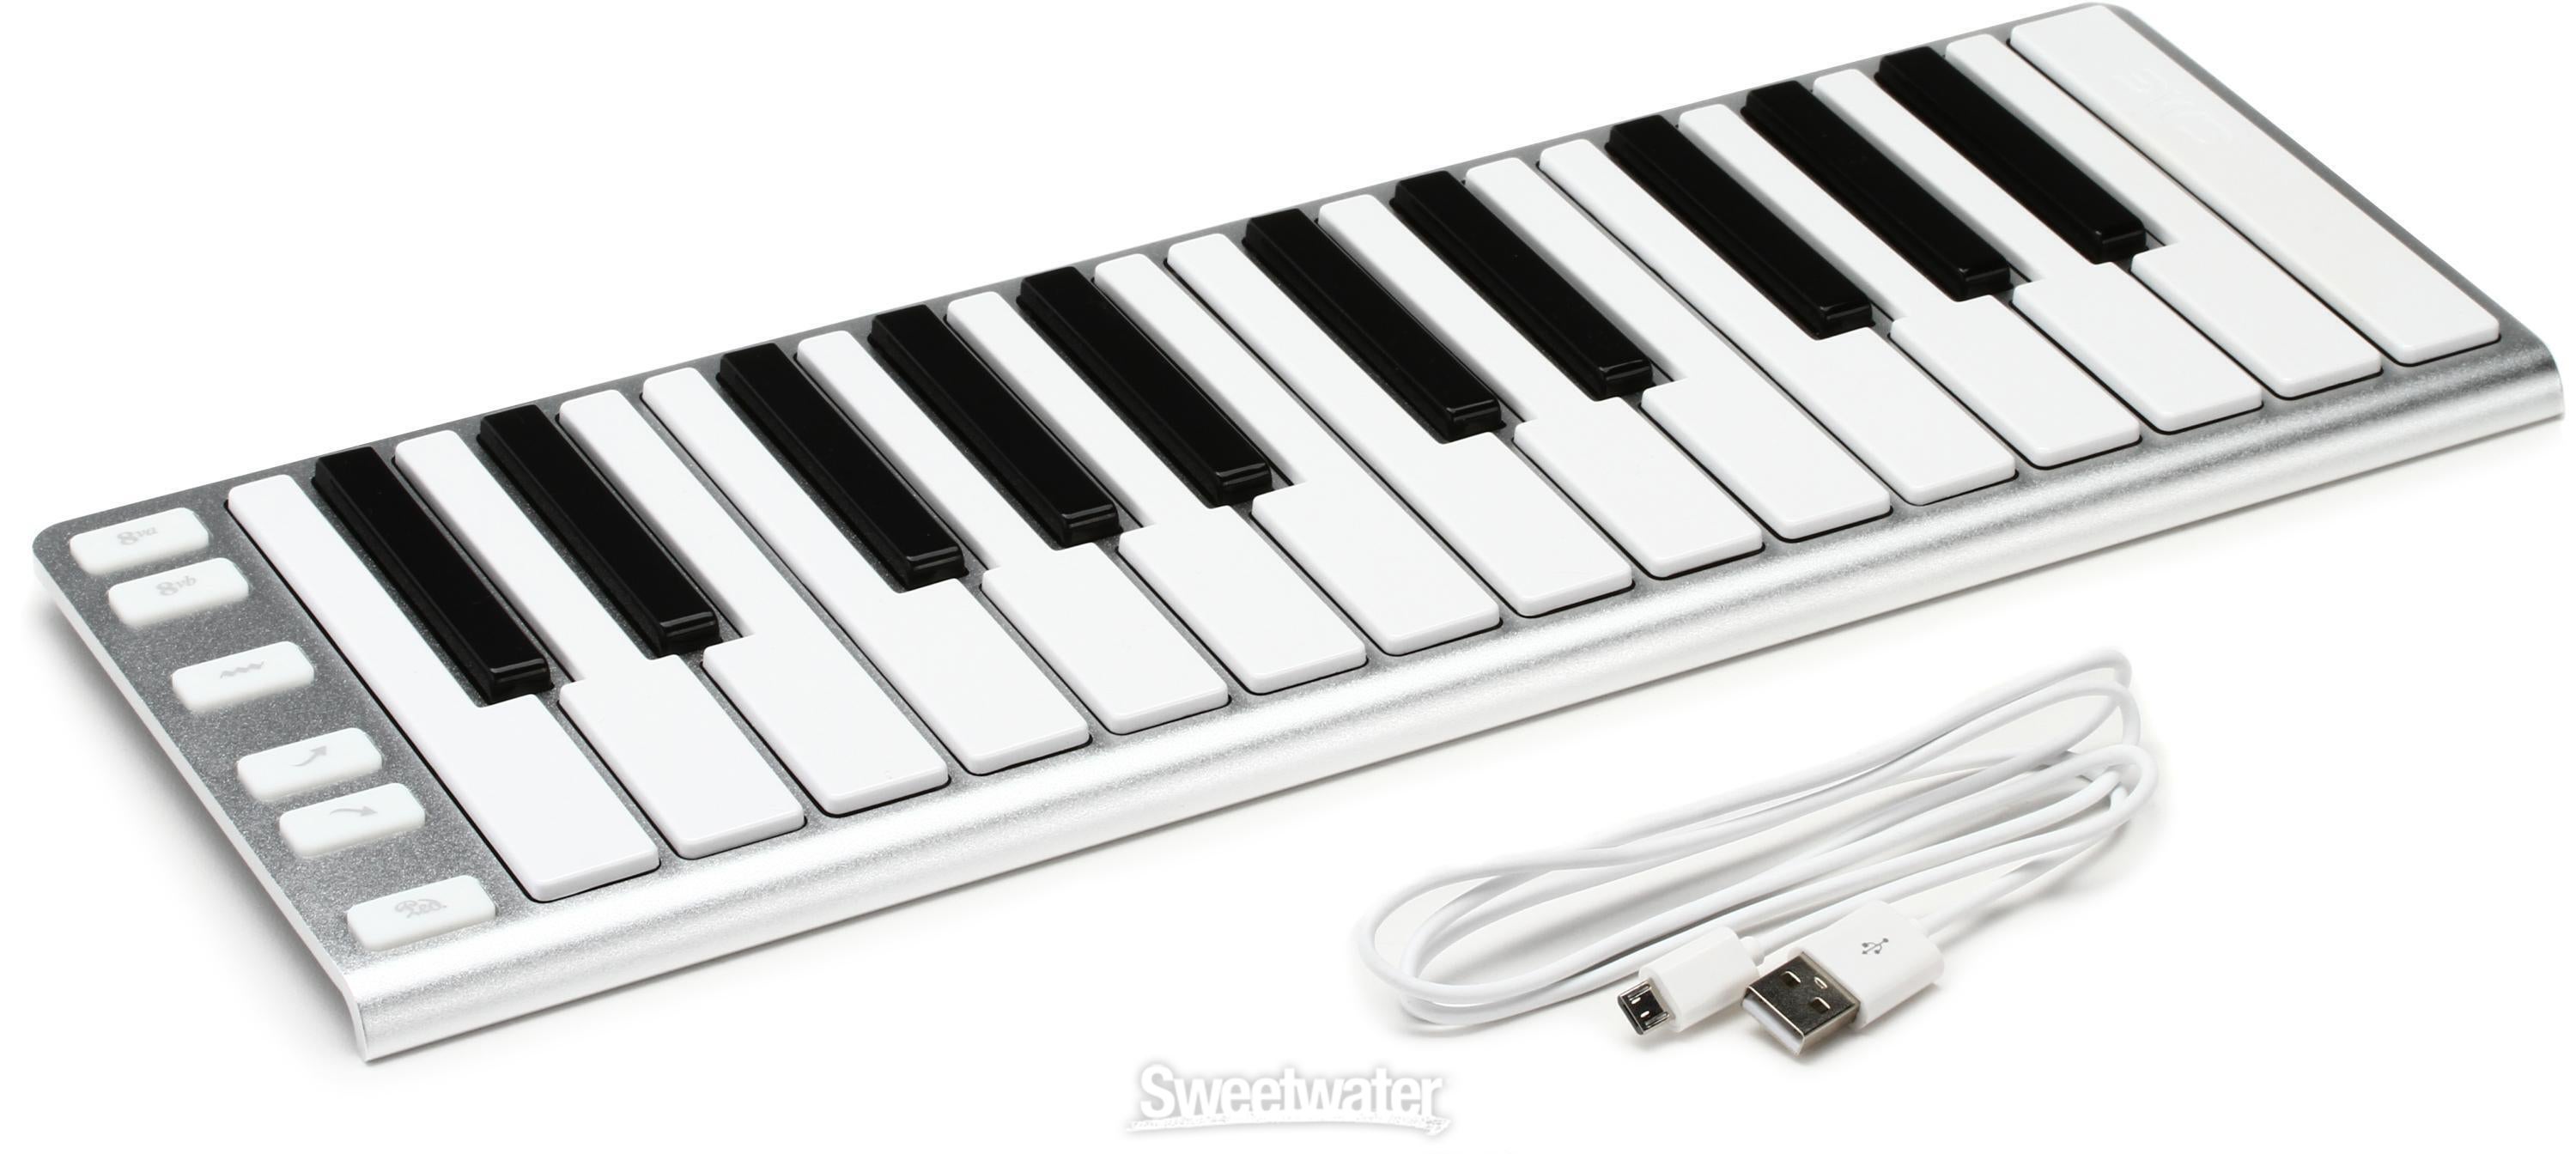 【大人気即納】CME PRO 25鍵 薄型ワイヤレスBluetooth MIDIキーボード Xkey Air 25(ソフトケース付-3千円相当) MIDIキーボード、コントローラー